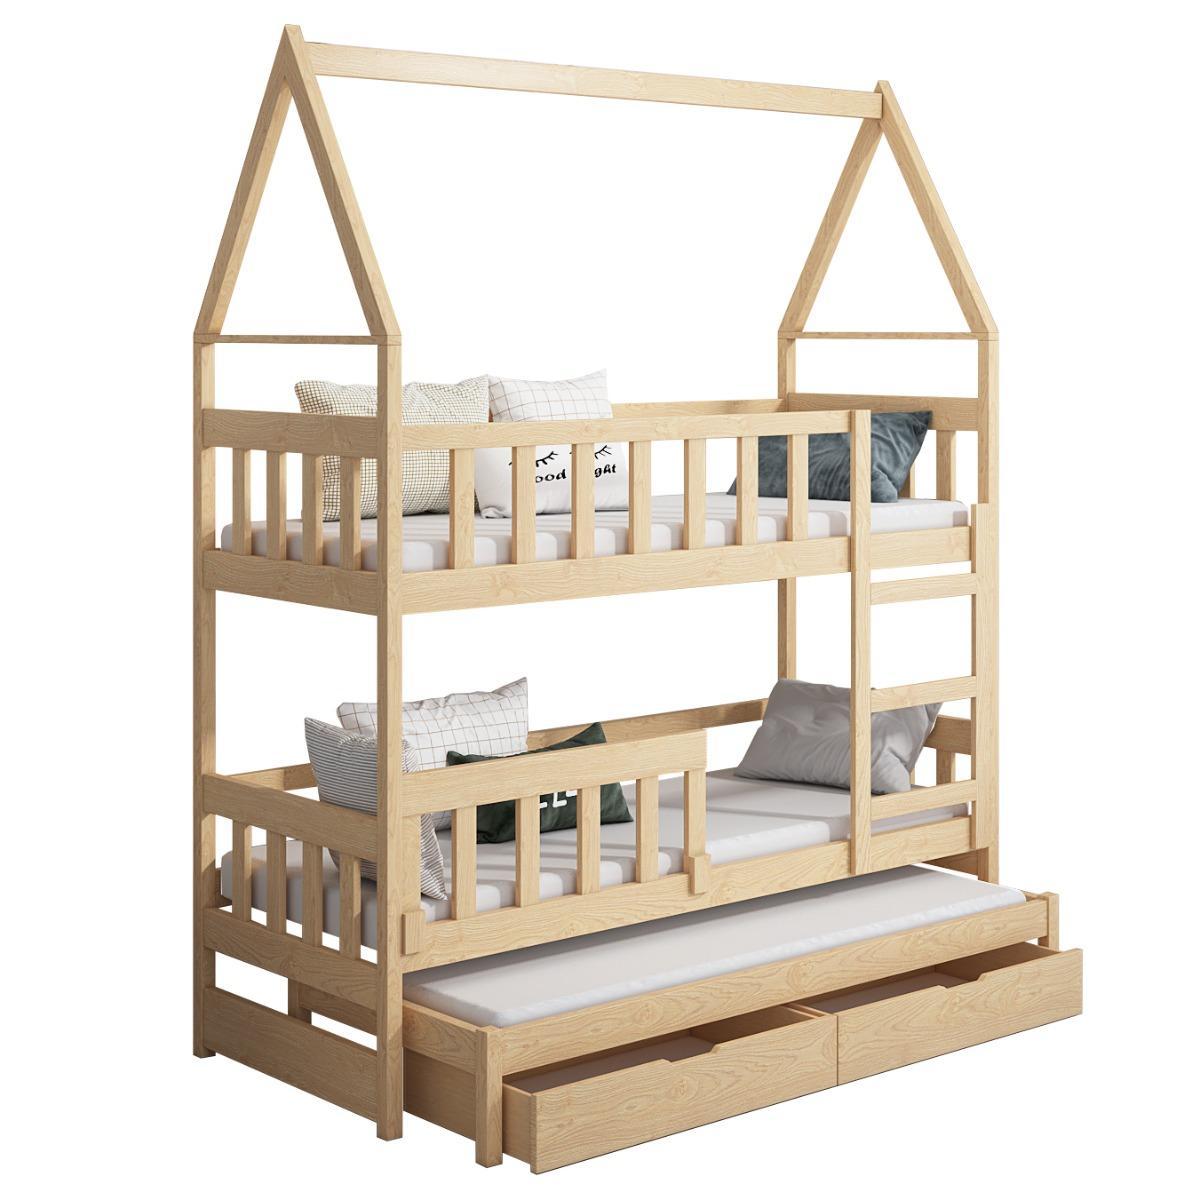 Łóżko piętrowe DOMEK drewno szare miejsce do spania dla 3 osób + materace piankowe 180x75 cm + barierka dolna do pokoju dziecka 5 Full Screen